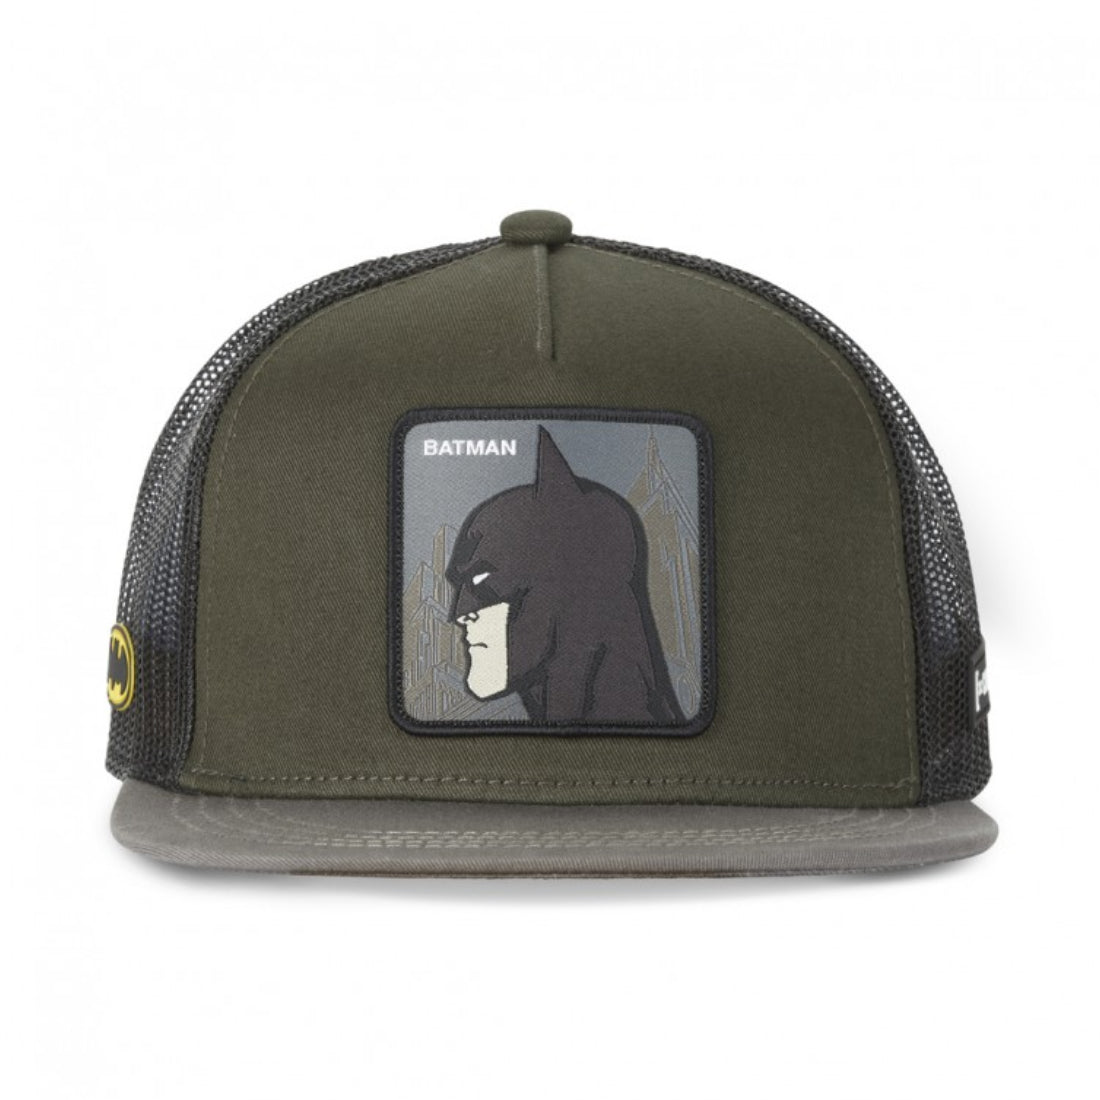 Queue Caps Batman Cap - Olive - قبعة - Store 974 | ستور ٩٧٤